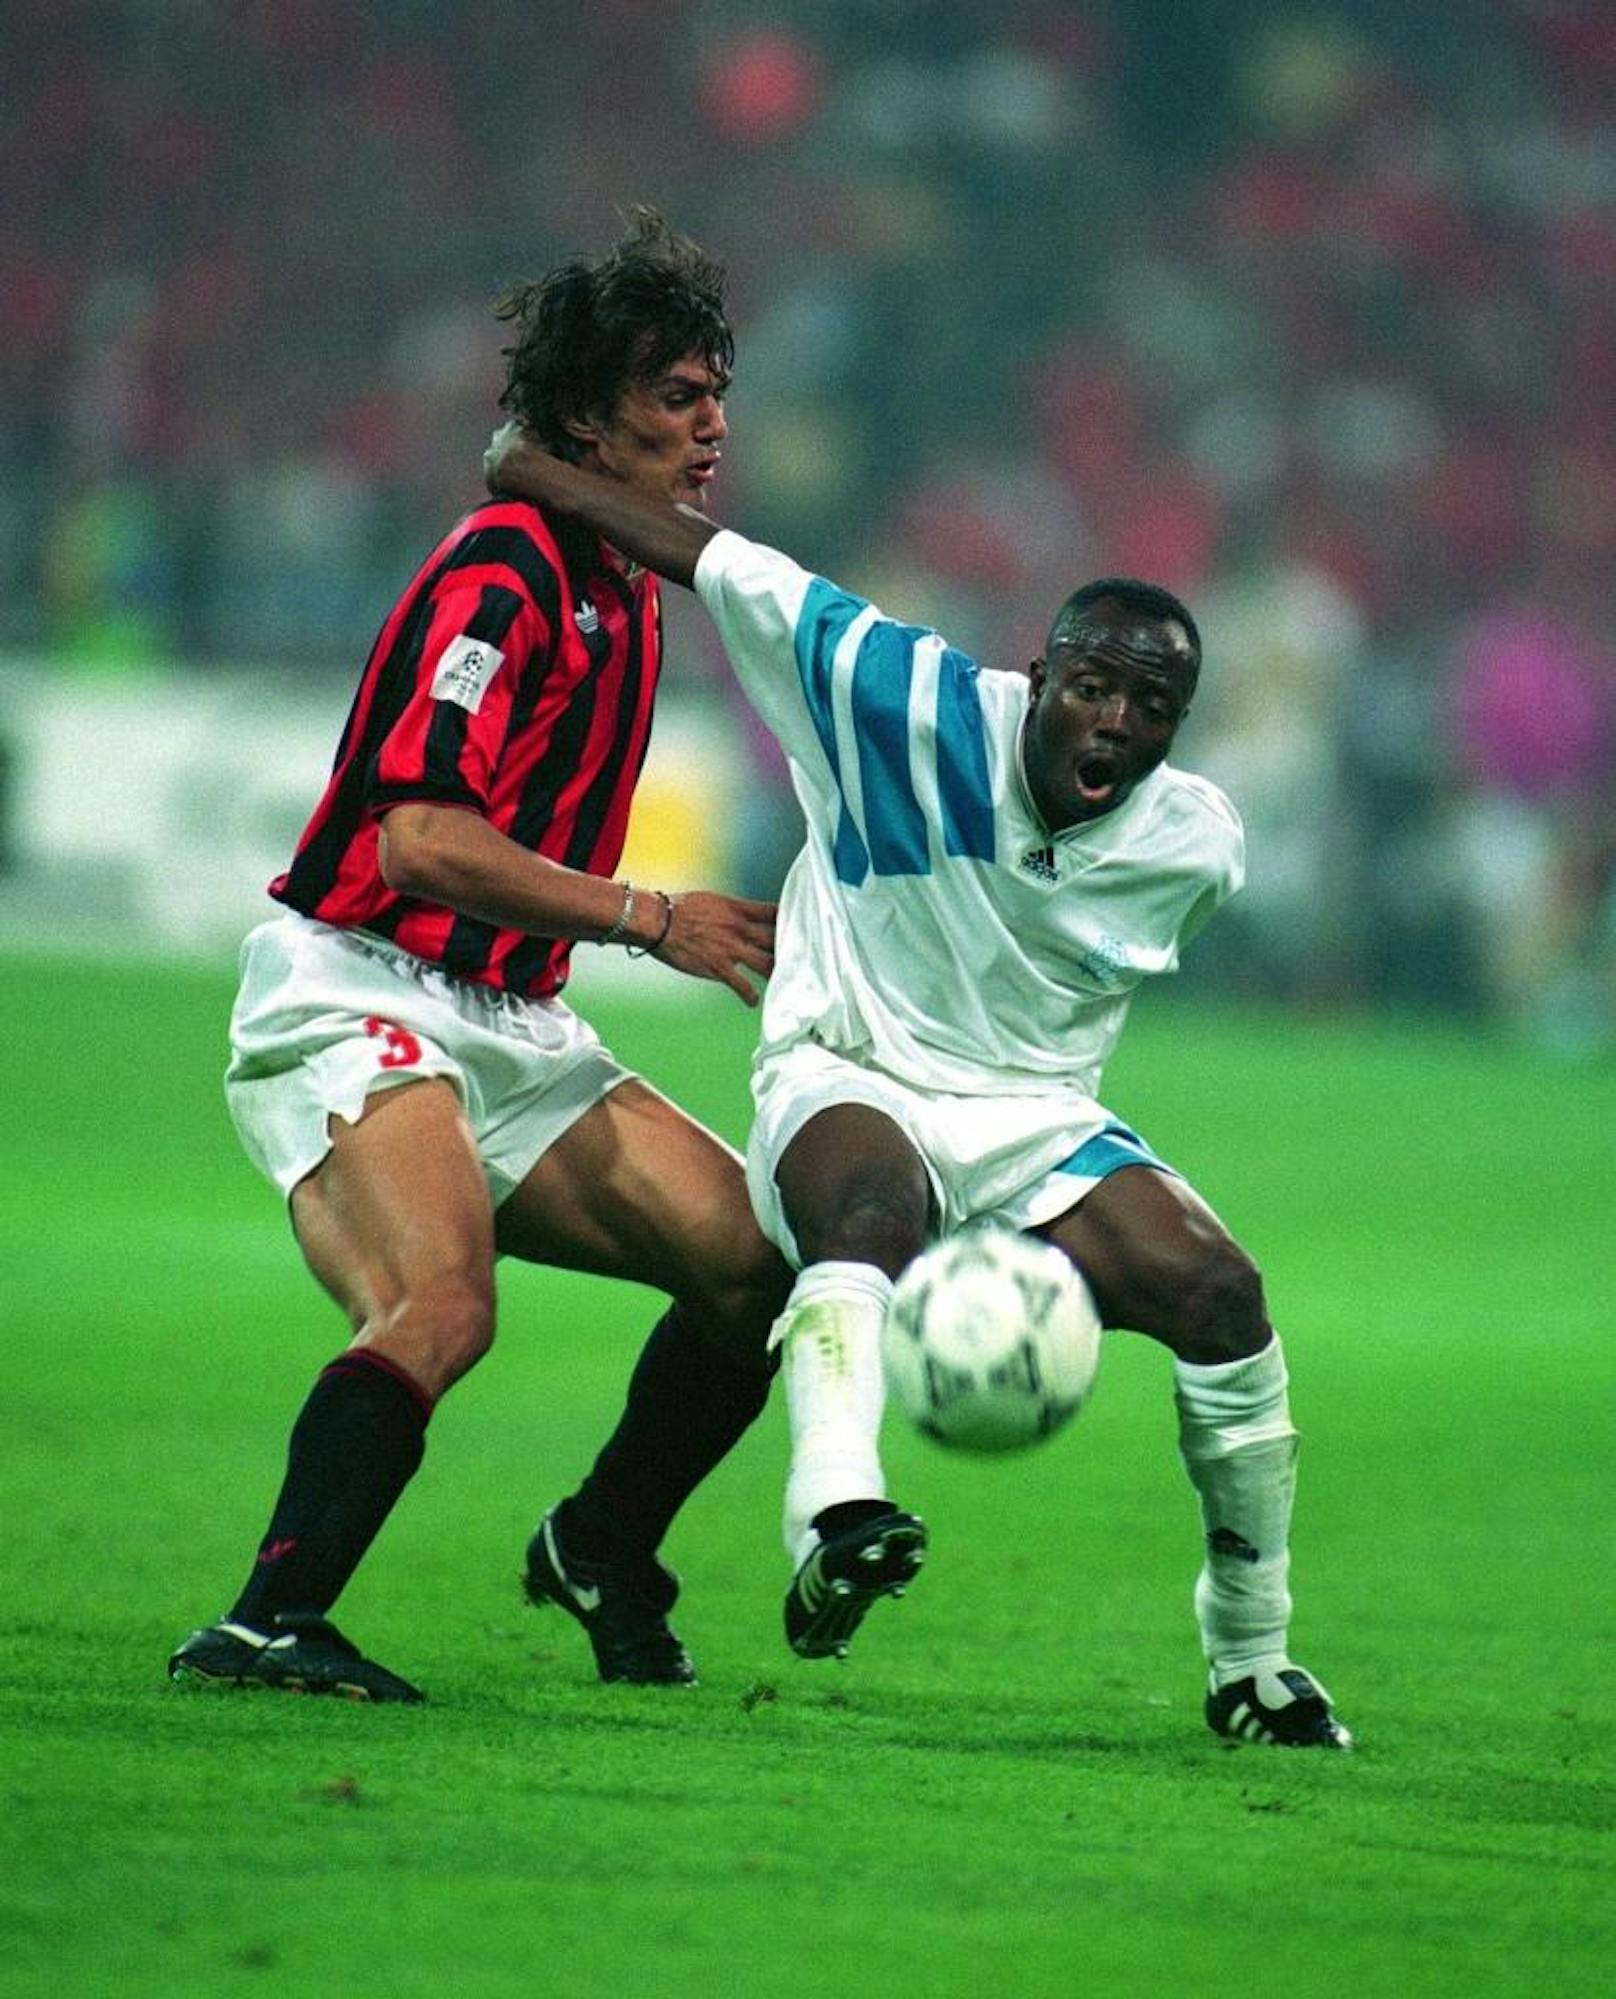 Im Jahr 1992 löste die Champions League den Europapokal der Landesmeister ab. Das erste Finale stieg am 26. Mai 1993 im Münchner Olympiastadion. Marseille besiegte den AC Milan mit 1:0. Das Goldtor erzielte Basile Boli.